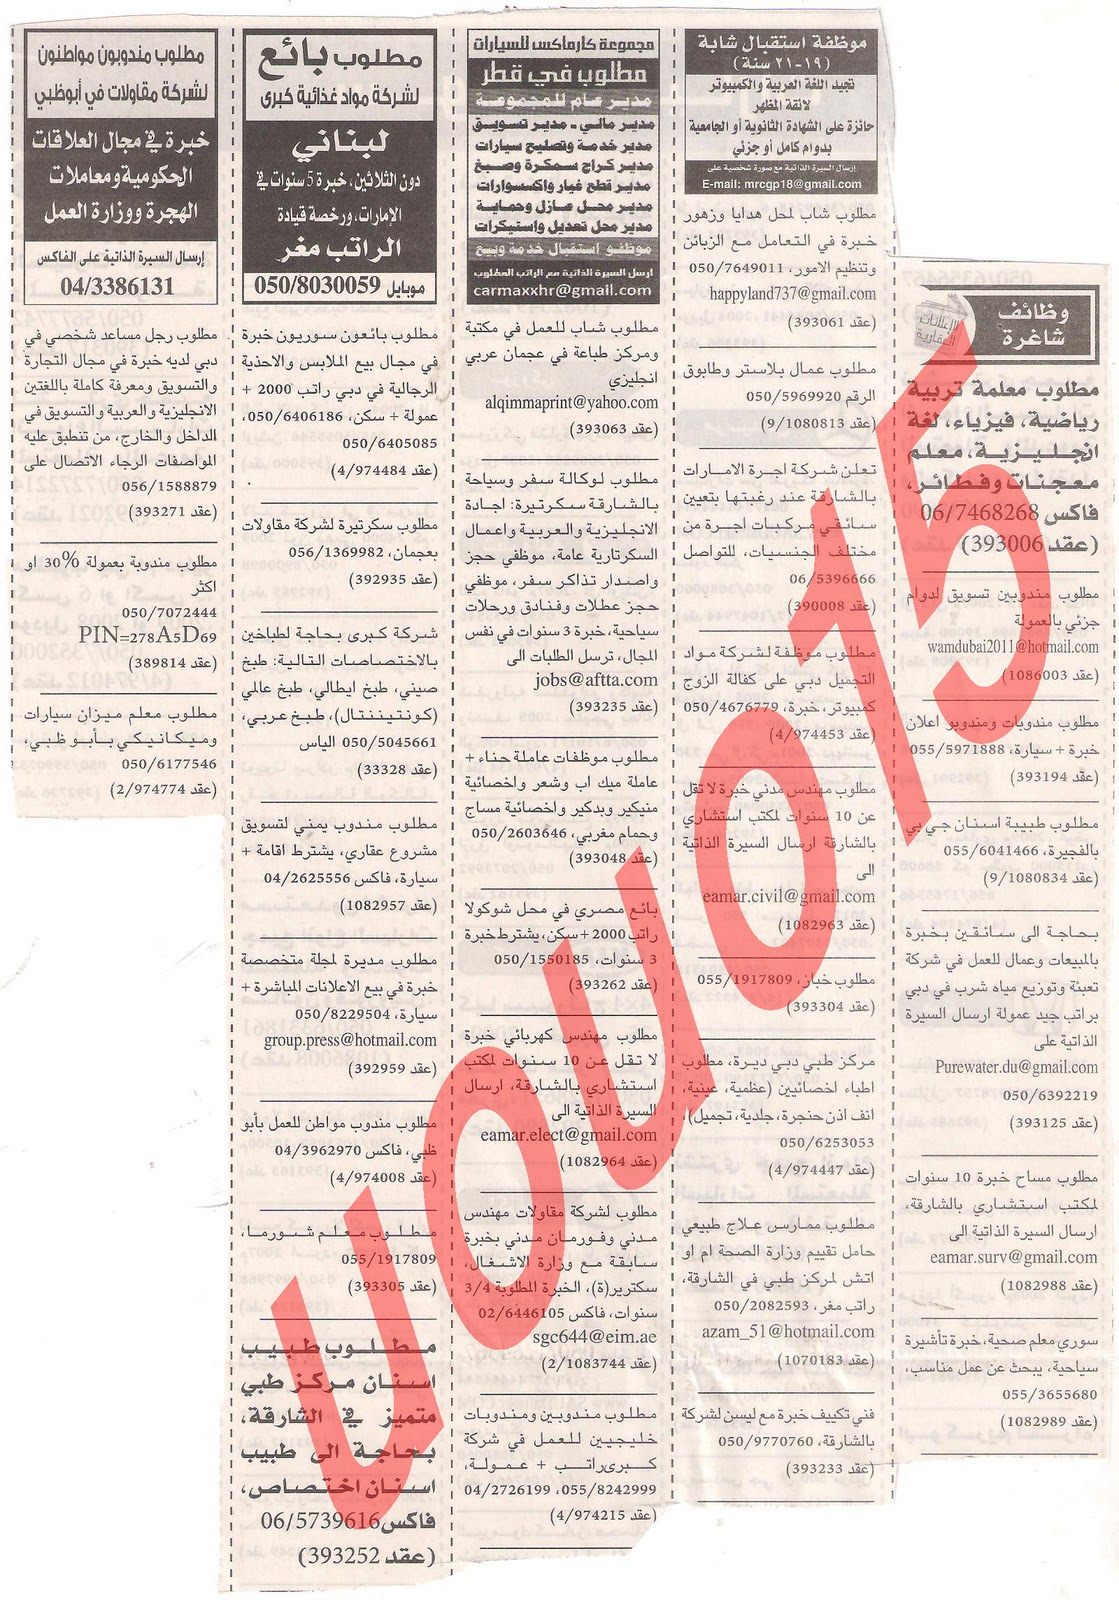 وظائف شاغرة من جريدة الخليج الخميس 22\12\2011 , وظائف الهيئه العامة لرعاية الشباب والرياضة  5